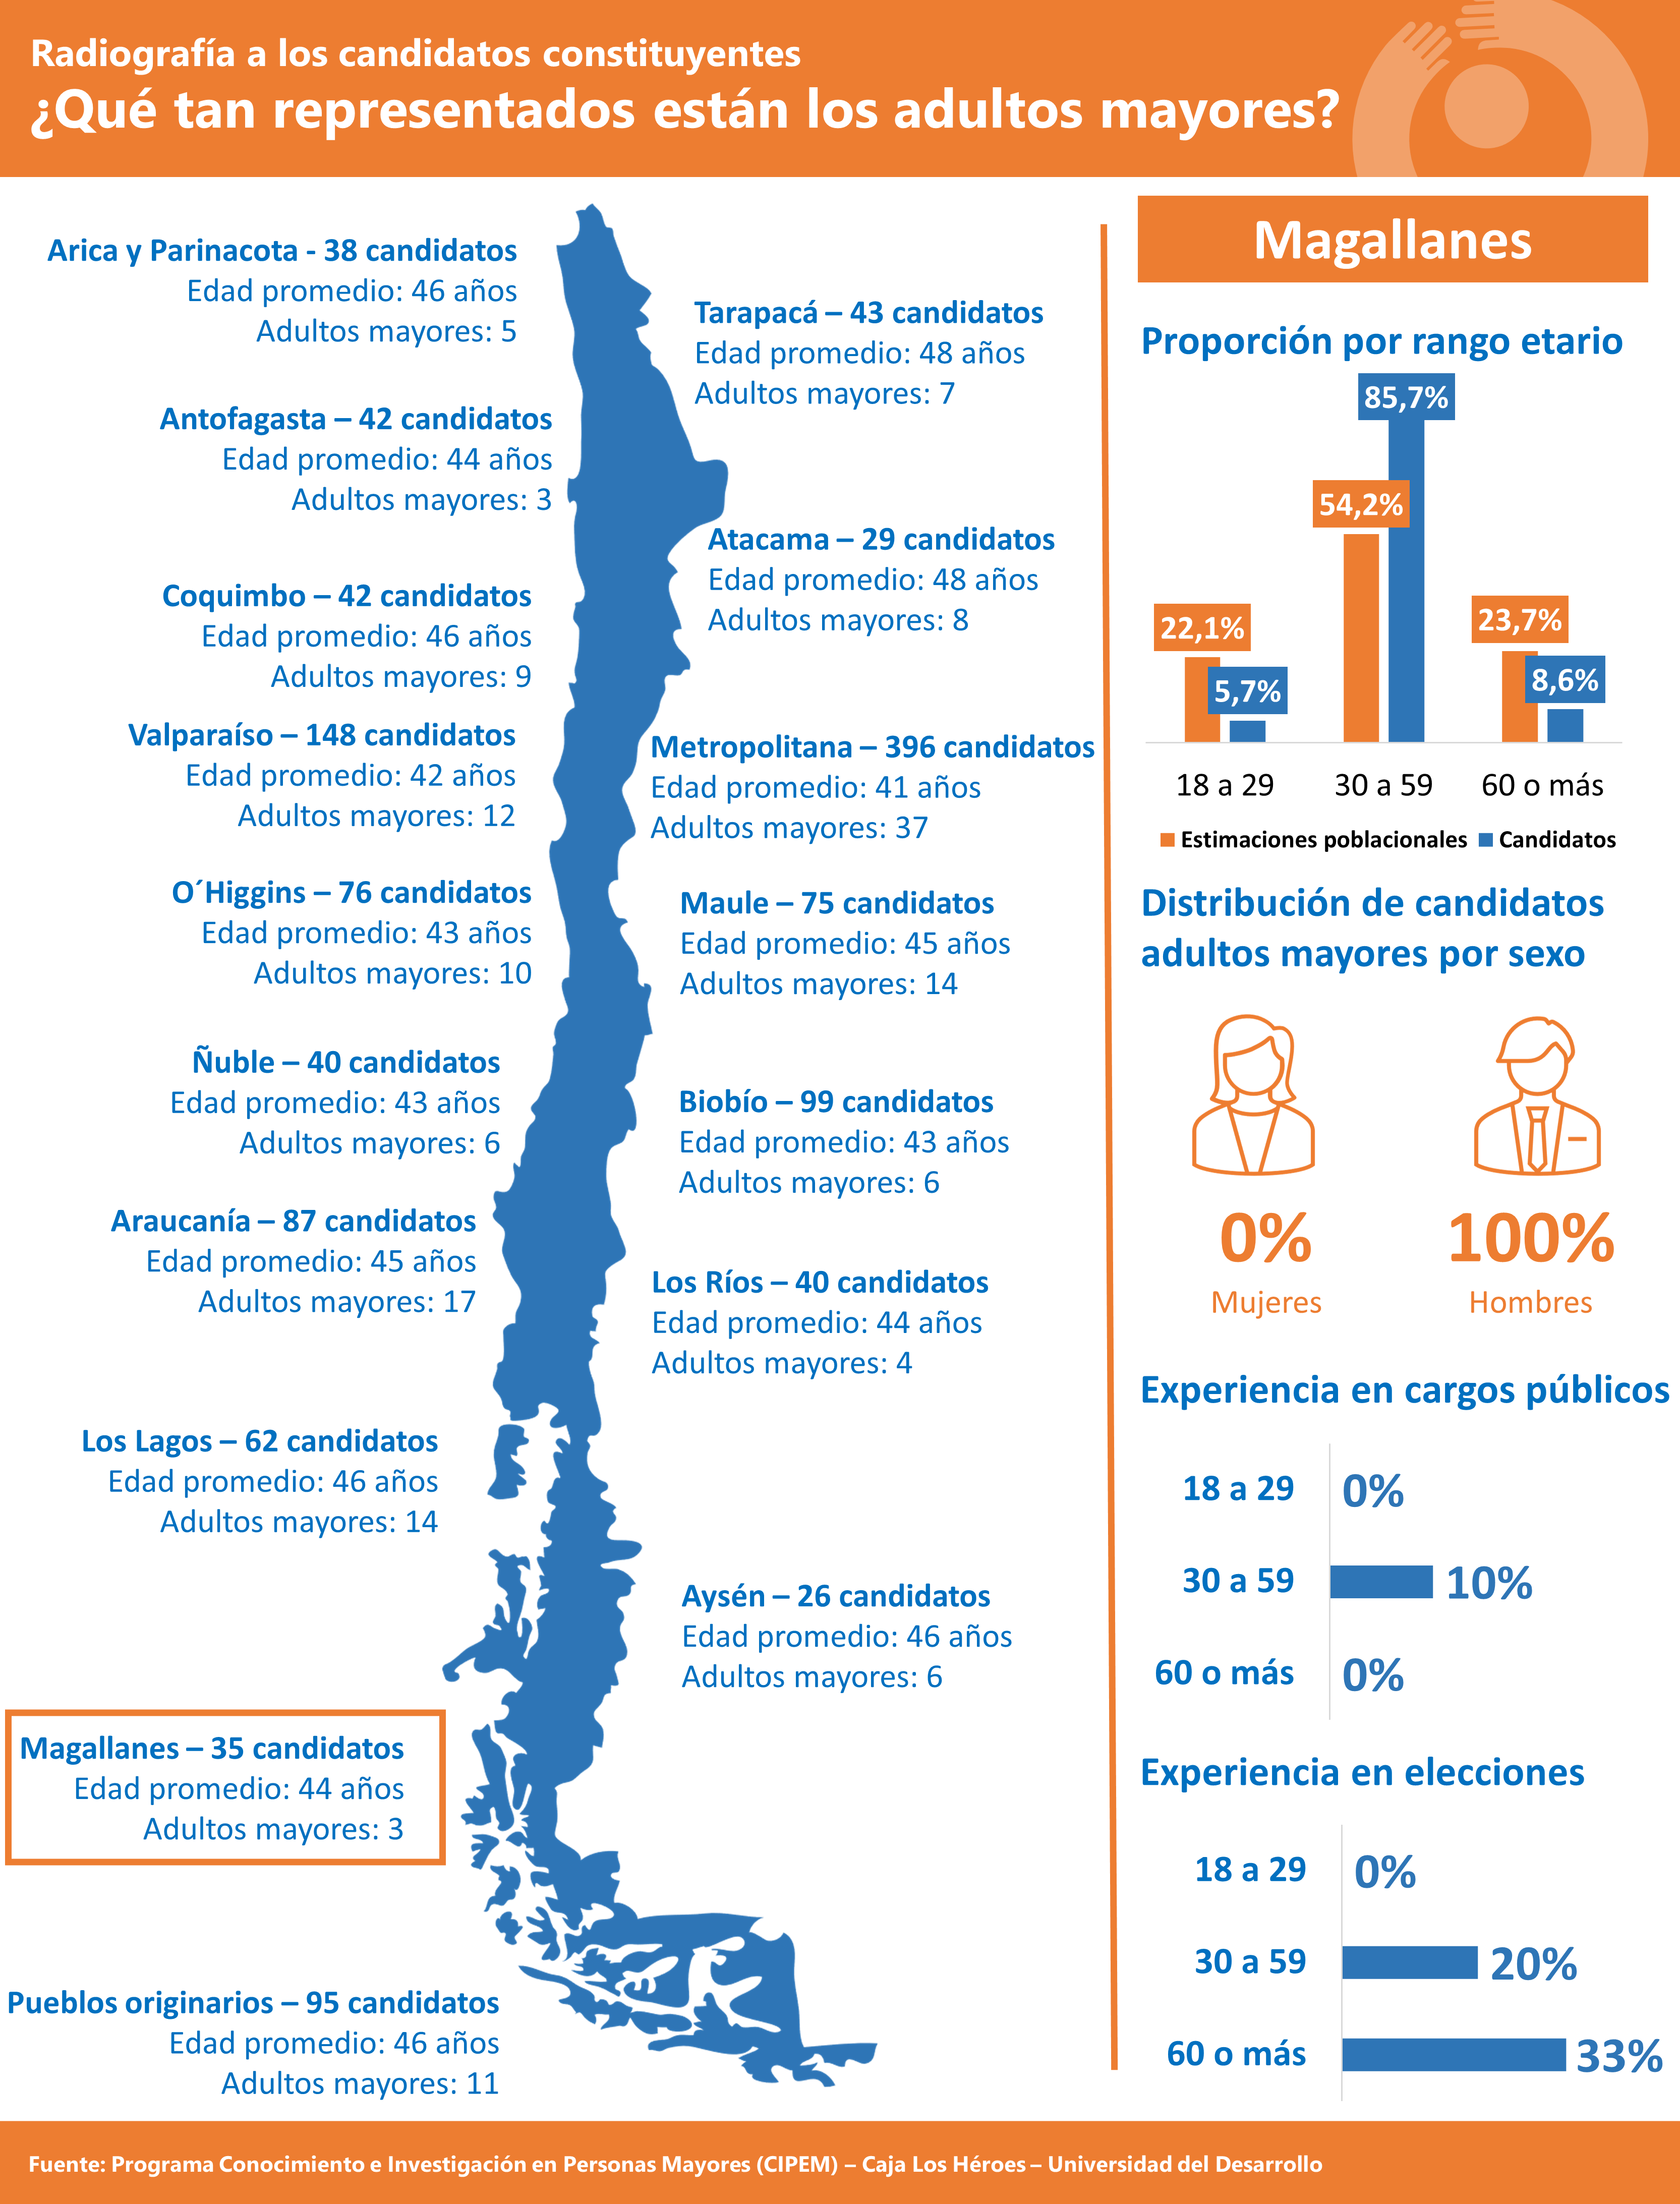 Adultos mayores tienen baja representación en candidatos a la Convención Constitucional: en Magallanes solo 3 candidatos, de 35 en total